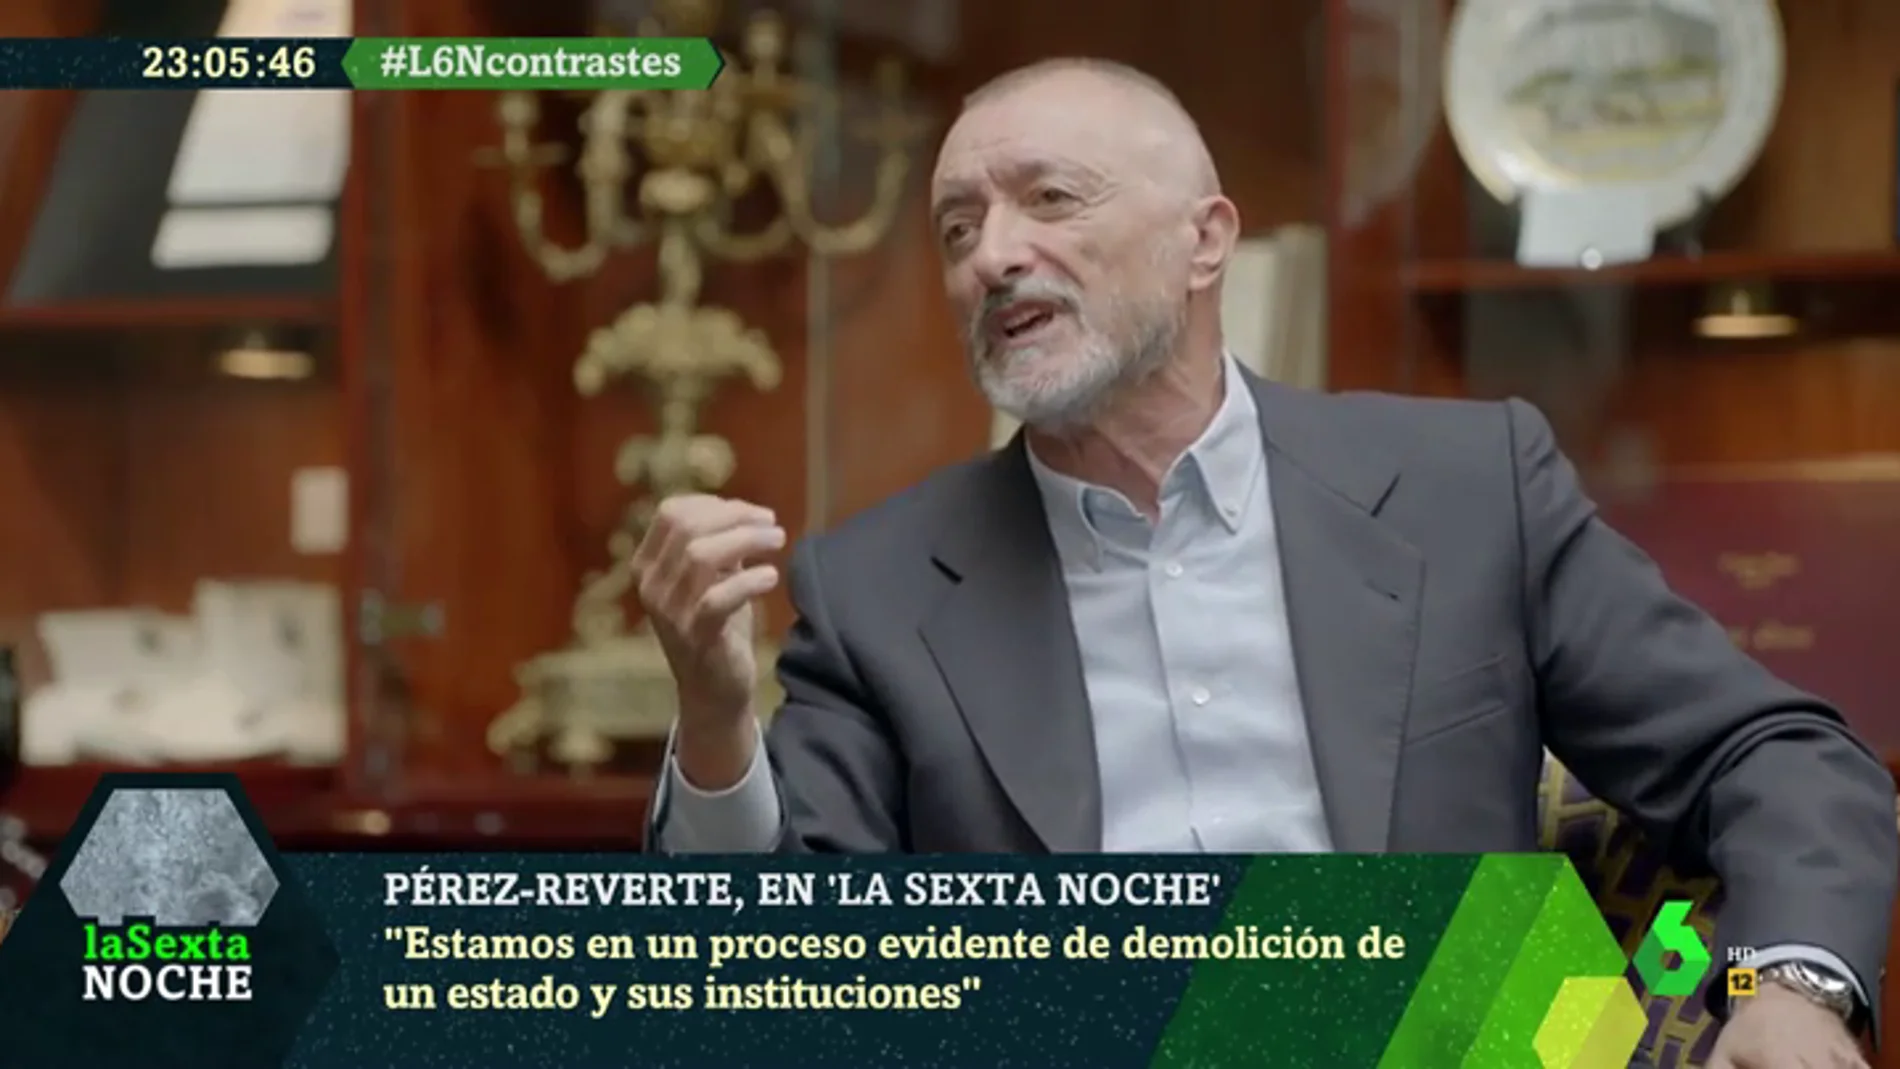 Pérez-Reverte, contra el "putiferio político": "¿Echenique u Ortega Smith me van a construir el futuro? ¡Váyase al carajo!"